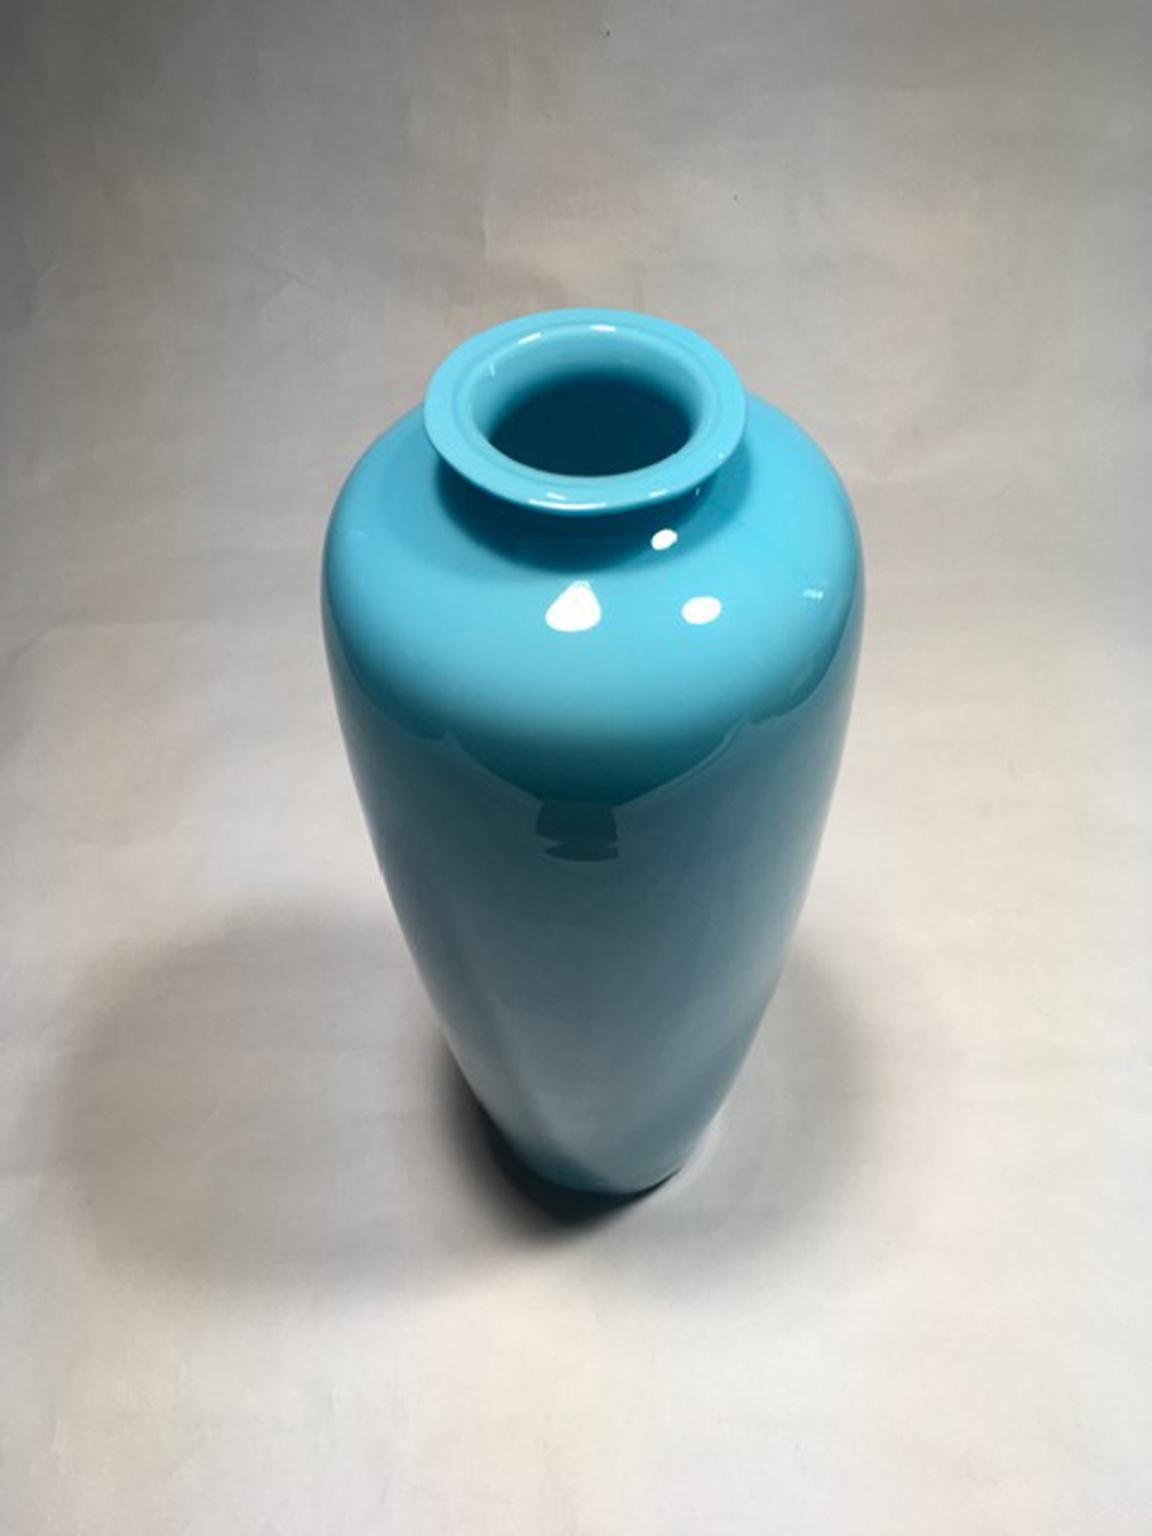 Ce vase post-moderne en verre de Murano présente un ton bleu clair très élégant et délicat.
Parce qu'il ne s'agit pas d'une production industrielle, le vase présente quelques petites irrégularités dans sa forme.